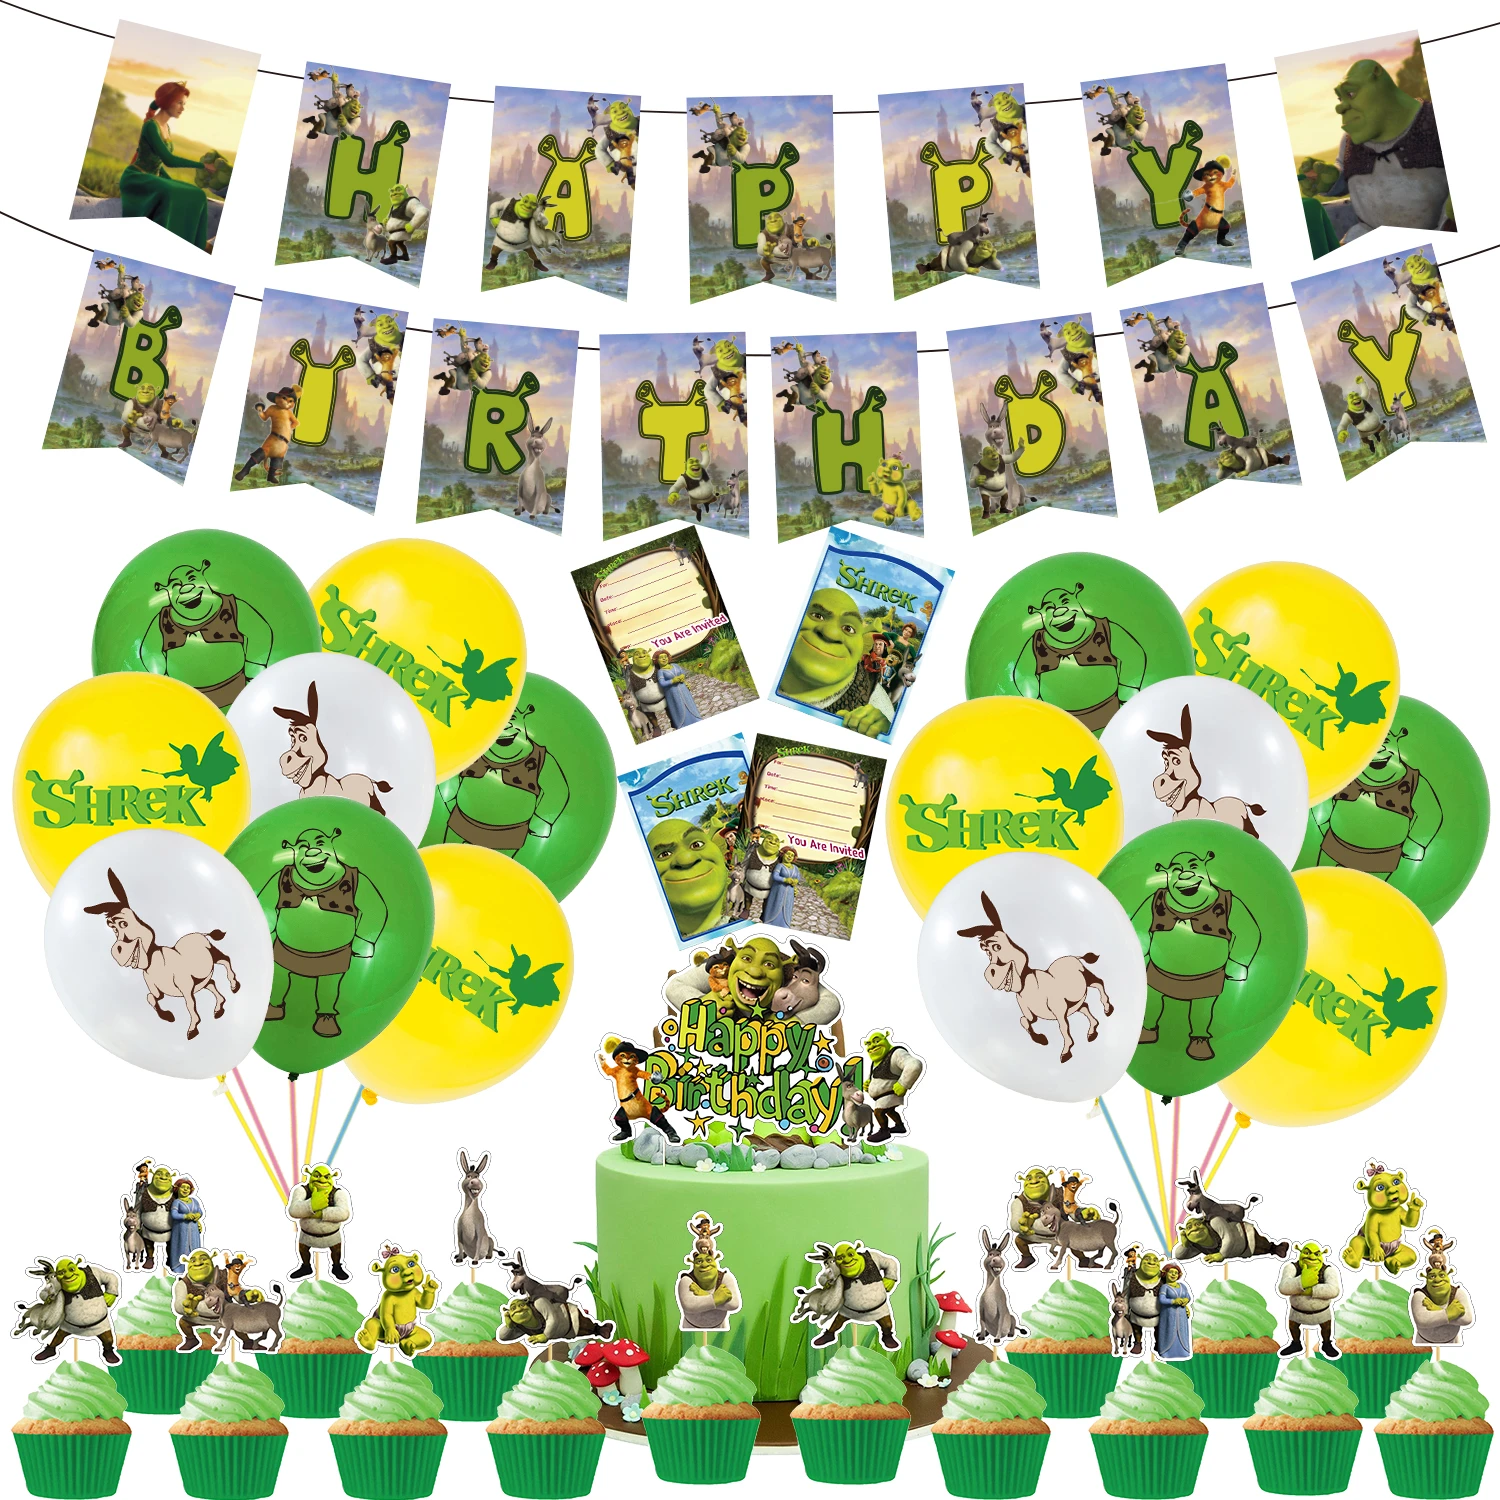 Decoraciones de fiesta de cumpleaños de Shrek con temática de dibujos  animados, pancarta de Decoración de Pastel de burro, globos de látex,  tarjeta de invitación, recuerdos de fiesta para niños|Decoraciones DIY de